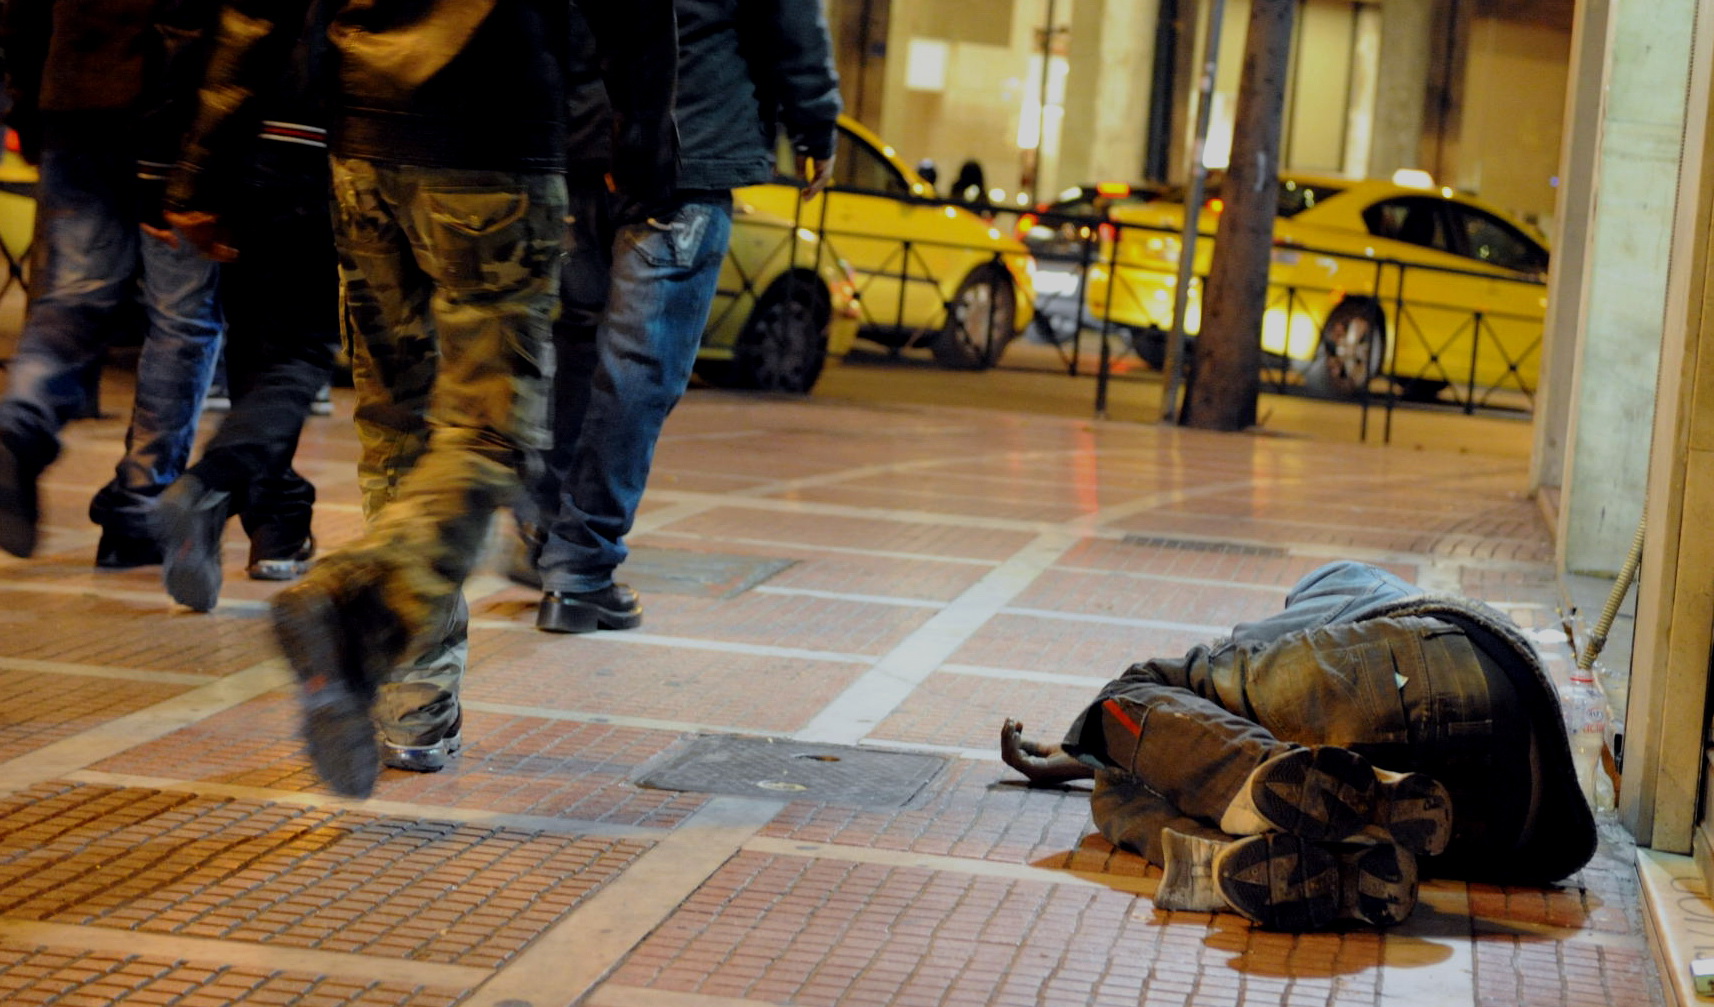 Δήμος Αθηναίων: Θερμαινόμενος χώρος για τους αστέγους και 24ωρη τηλεφωνική γραμμή για έκτακτα περιστατικά